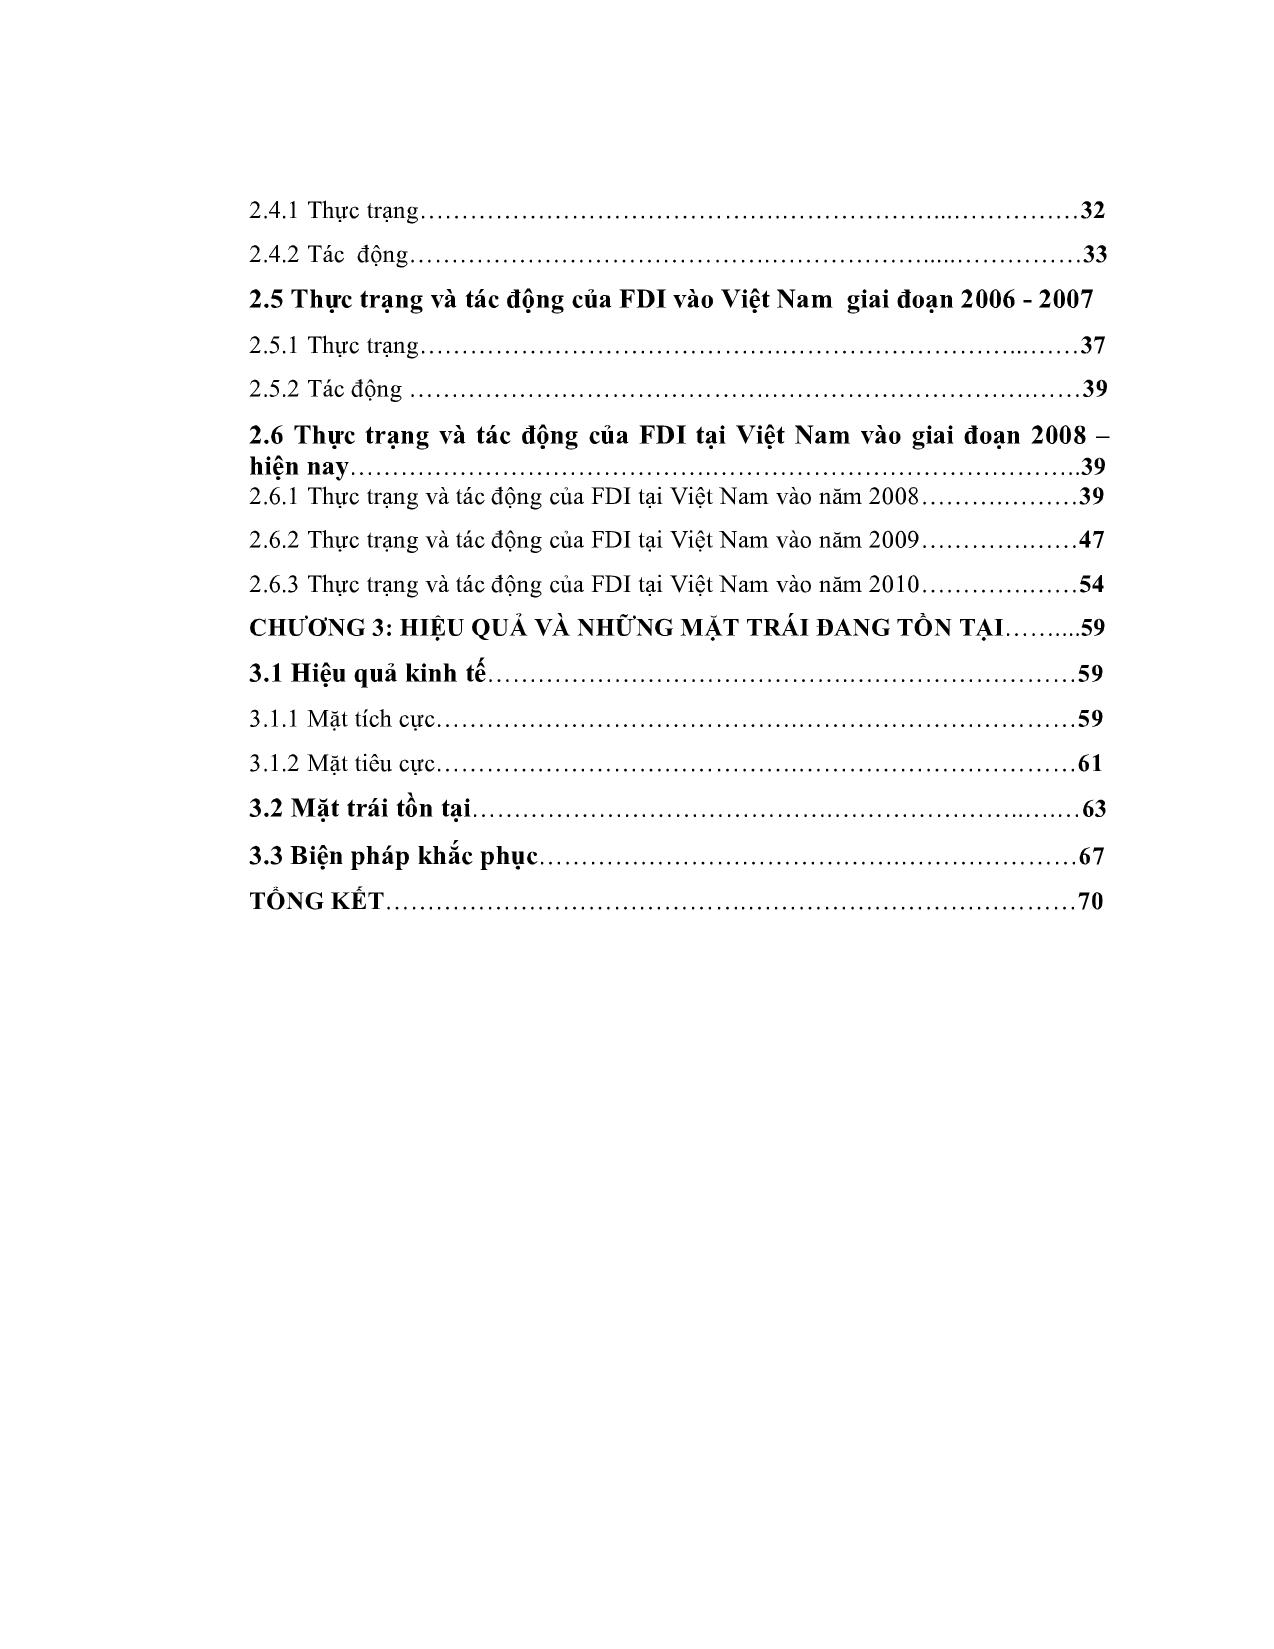 Đề tài Nghiên cứu về FDI vào Việt Nam giai đoạn 2000-2010 trang 4